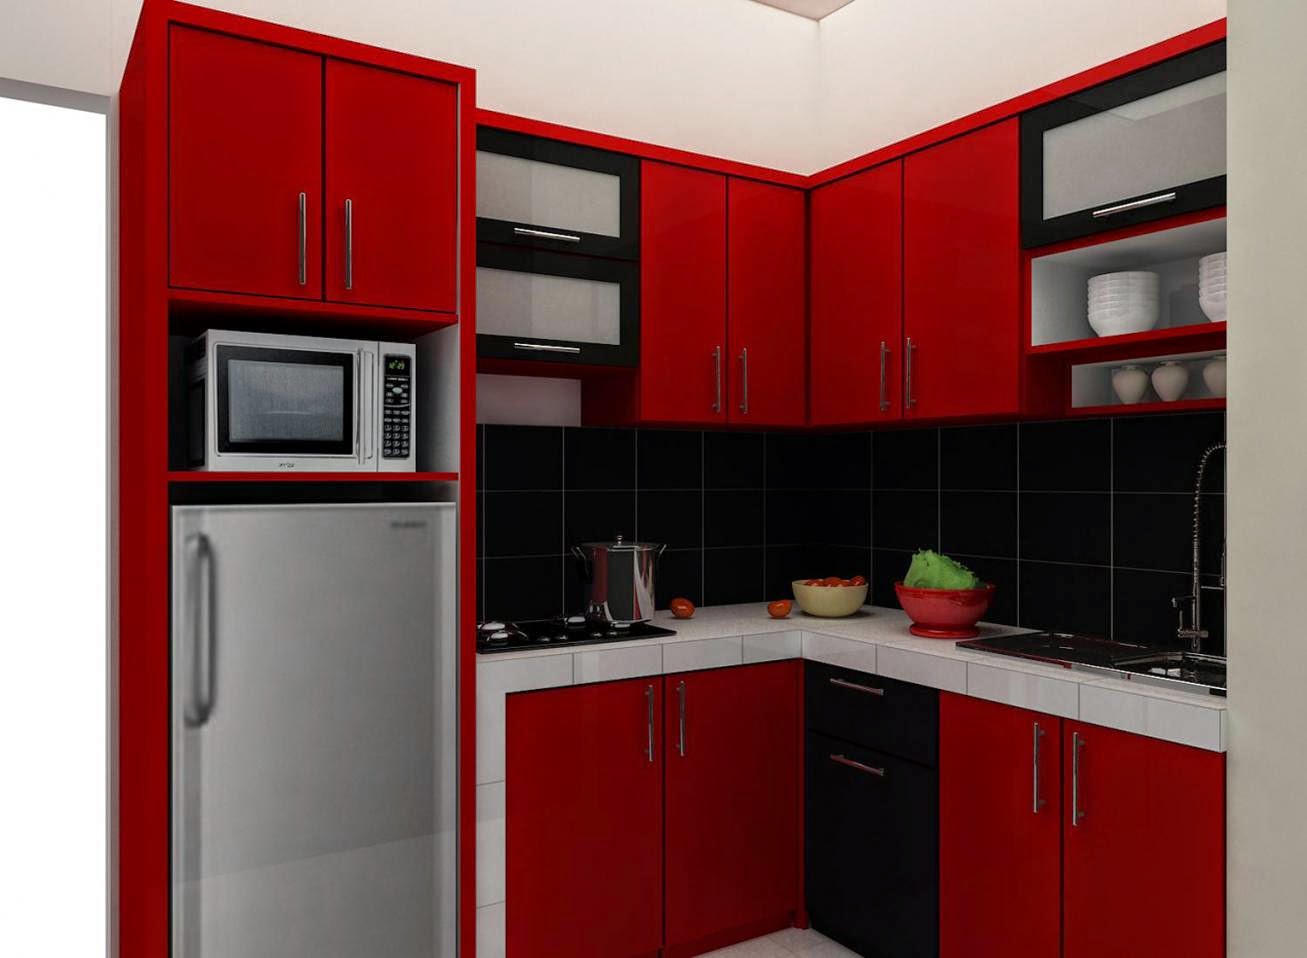 Aiallen Desain Dapur Rumah Minimalis Terbaru 2014